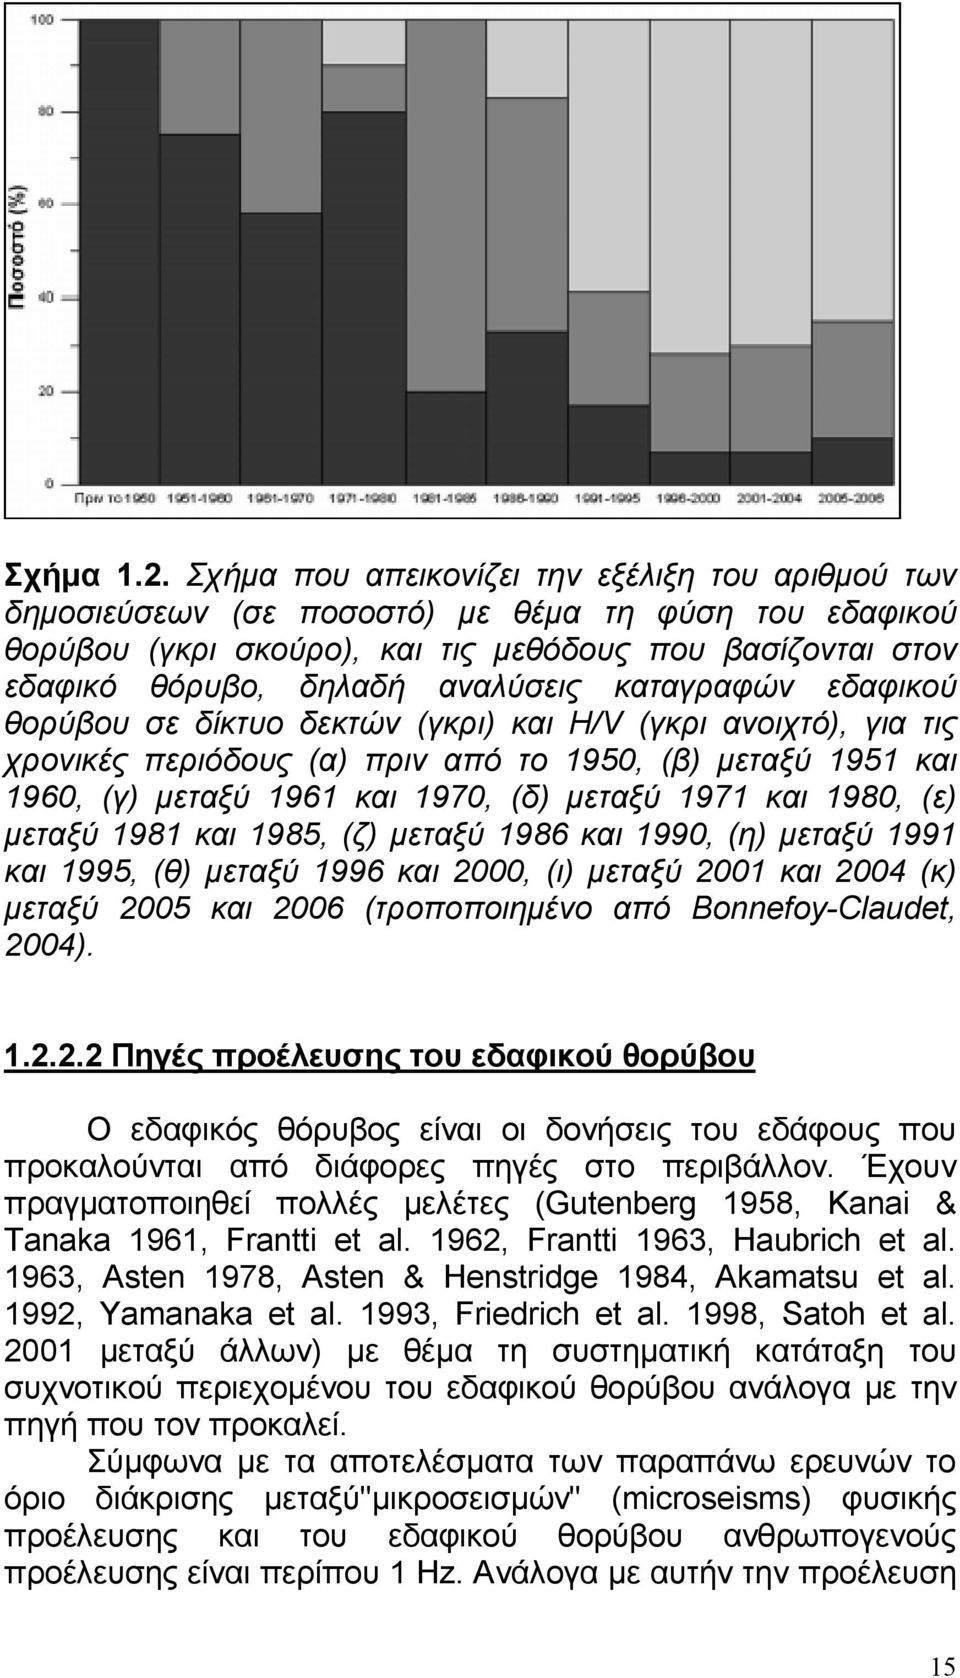 καταγραφών εδαφικού θορύβου σε δίκτυο δεκτών (γκρι) και H/V (γκρι ανοιχτό), για τις χρονικές περιόδους (α) πριν από το 1950, (β) µεταξύ 1951 και 1960, (γ) µεταξύ 1961 και 1970, (δ) µεταξύ 1971 και